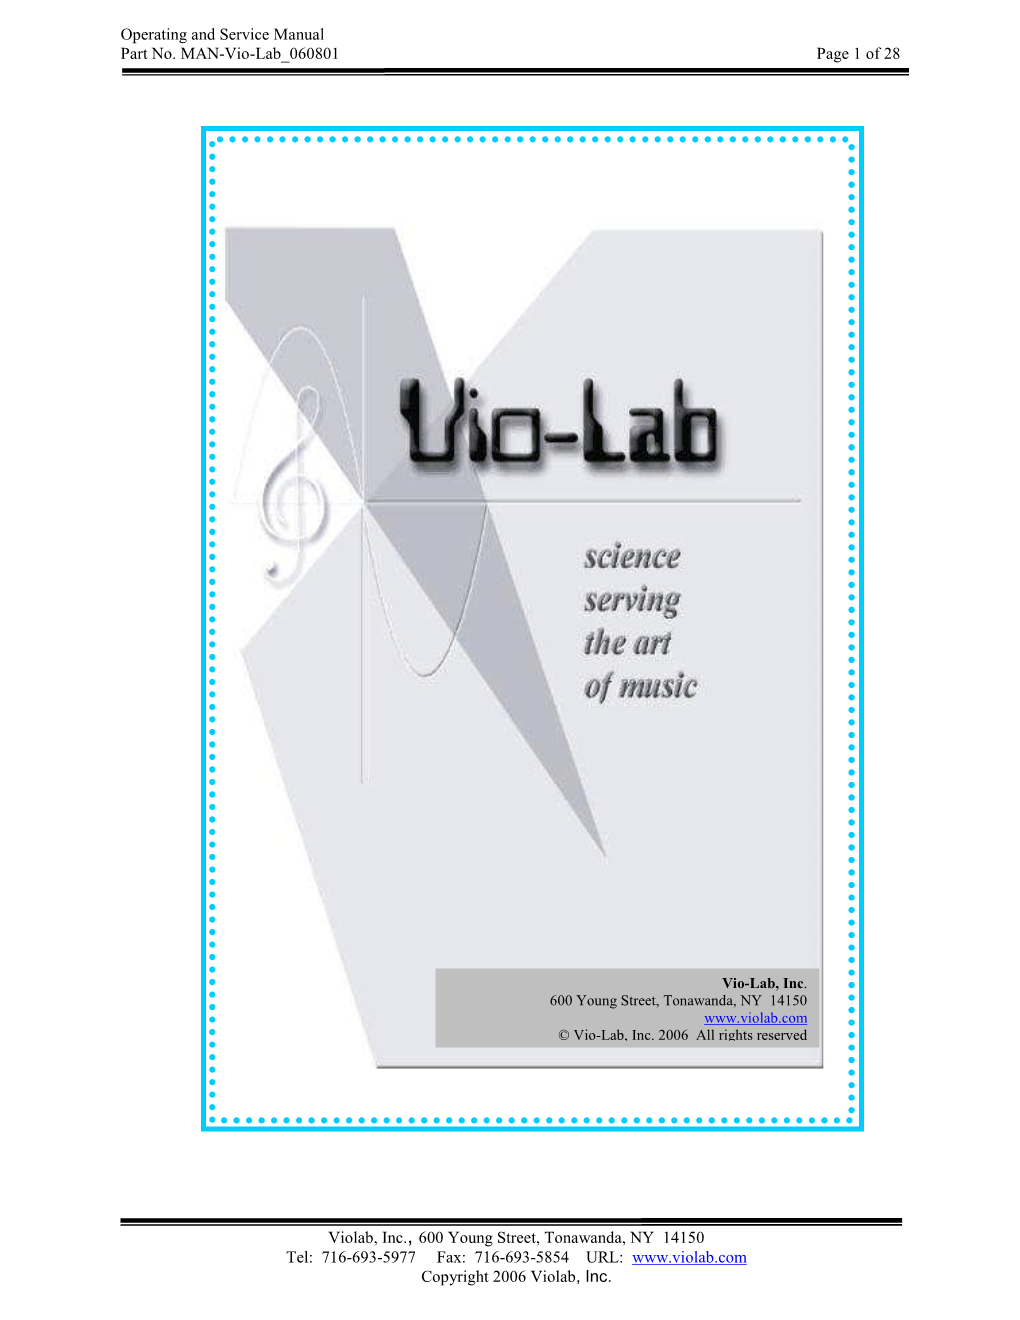 Violab Manual